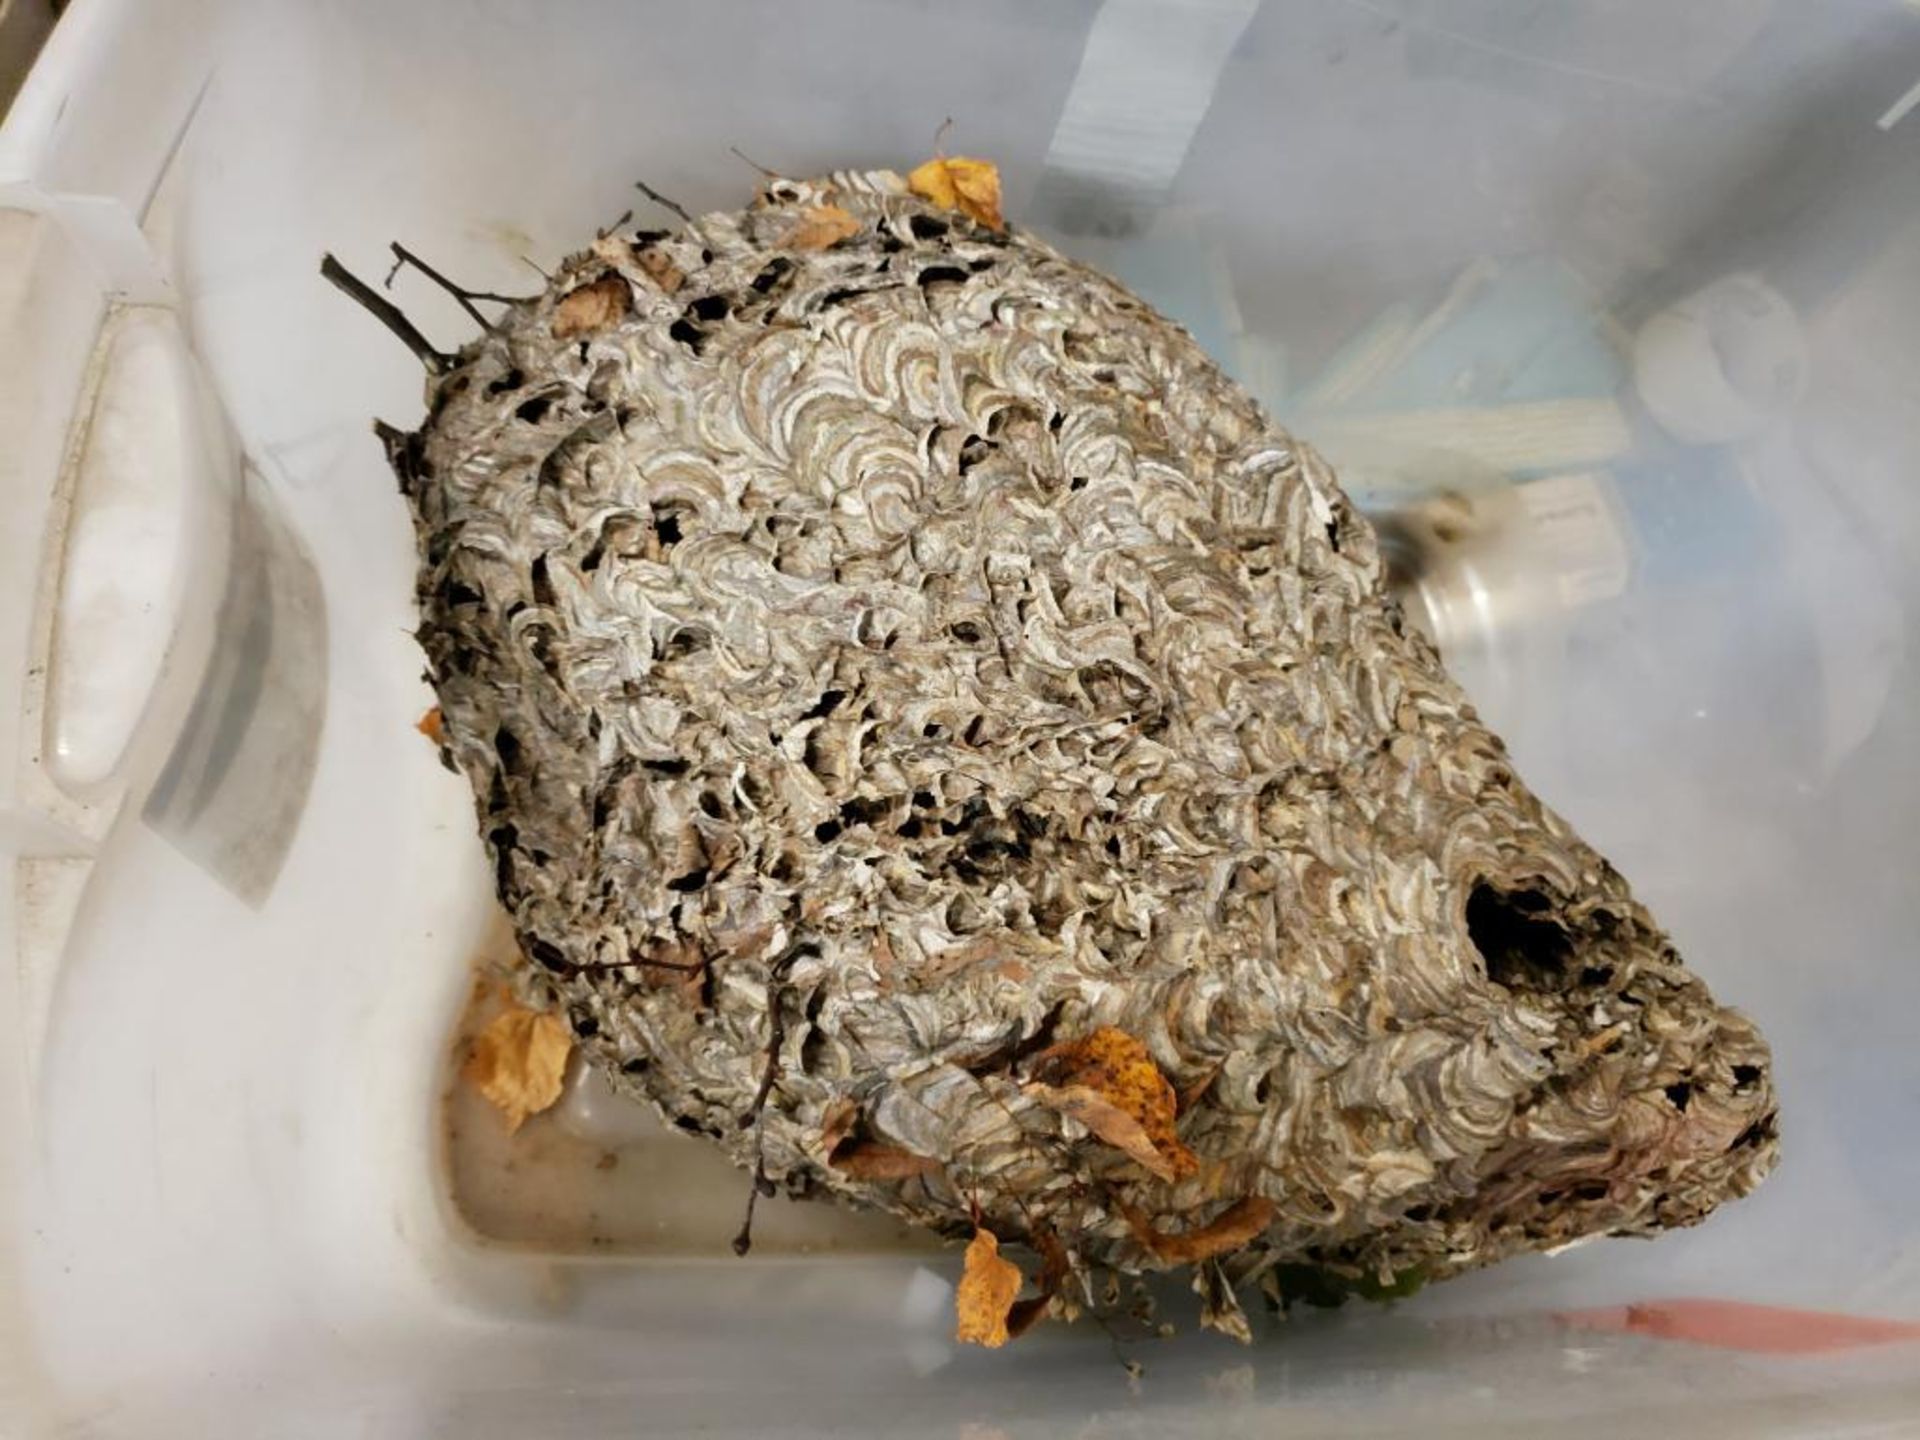 Wasps nest. - Image 4 of 4